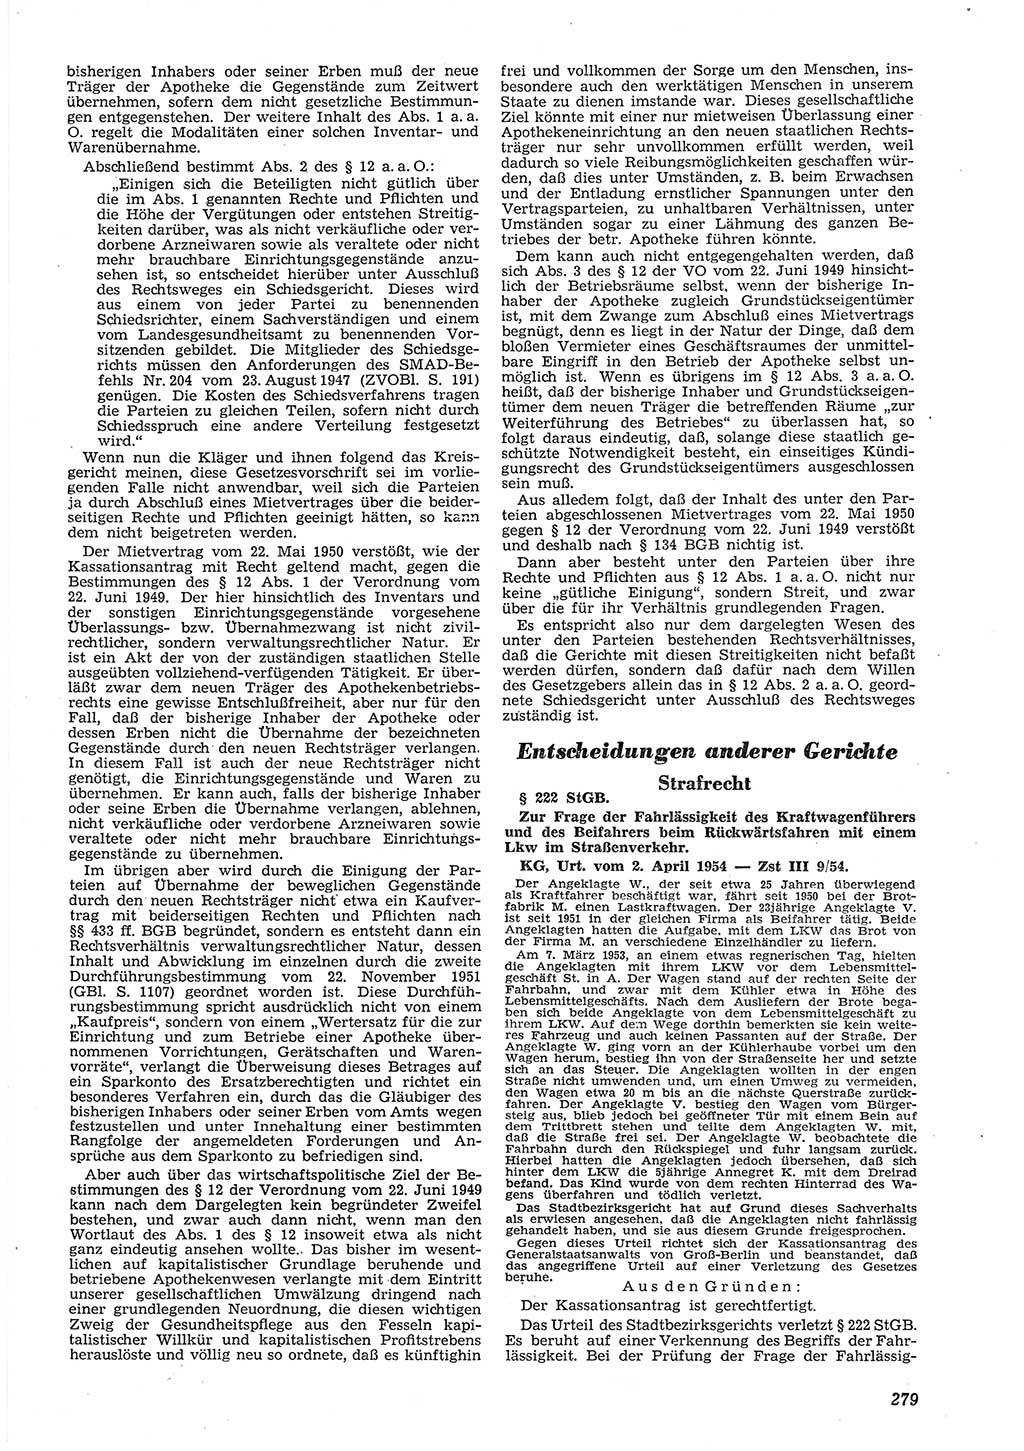 Neue Justiz (NJ), Zeitschrift für Recht und Rechtswissenschaft [Deutsche Demokratische Republik (DDR)], 8. Jahrgang 1954, Seite 279 (NJ DDR 1954, S. 279)